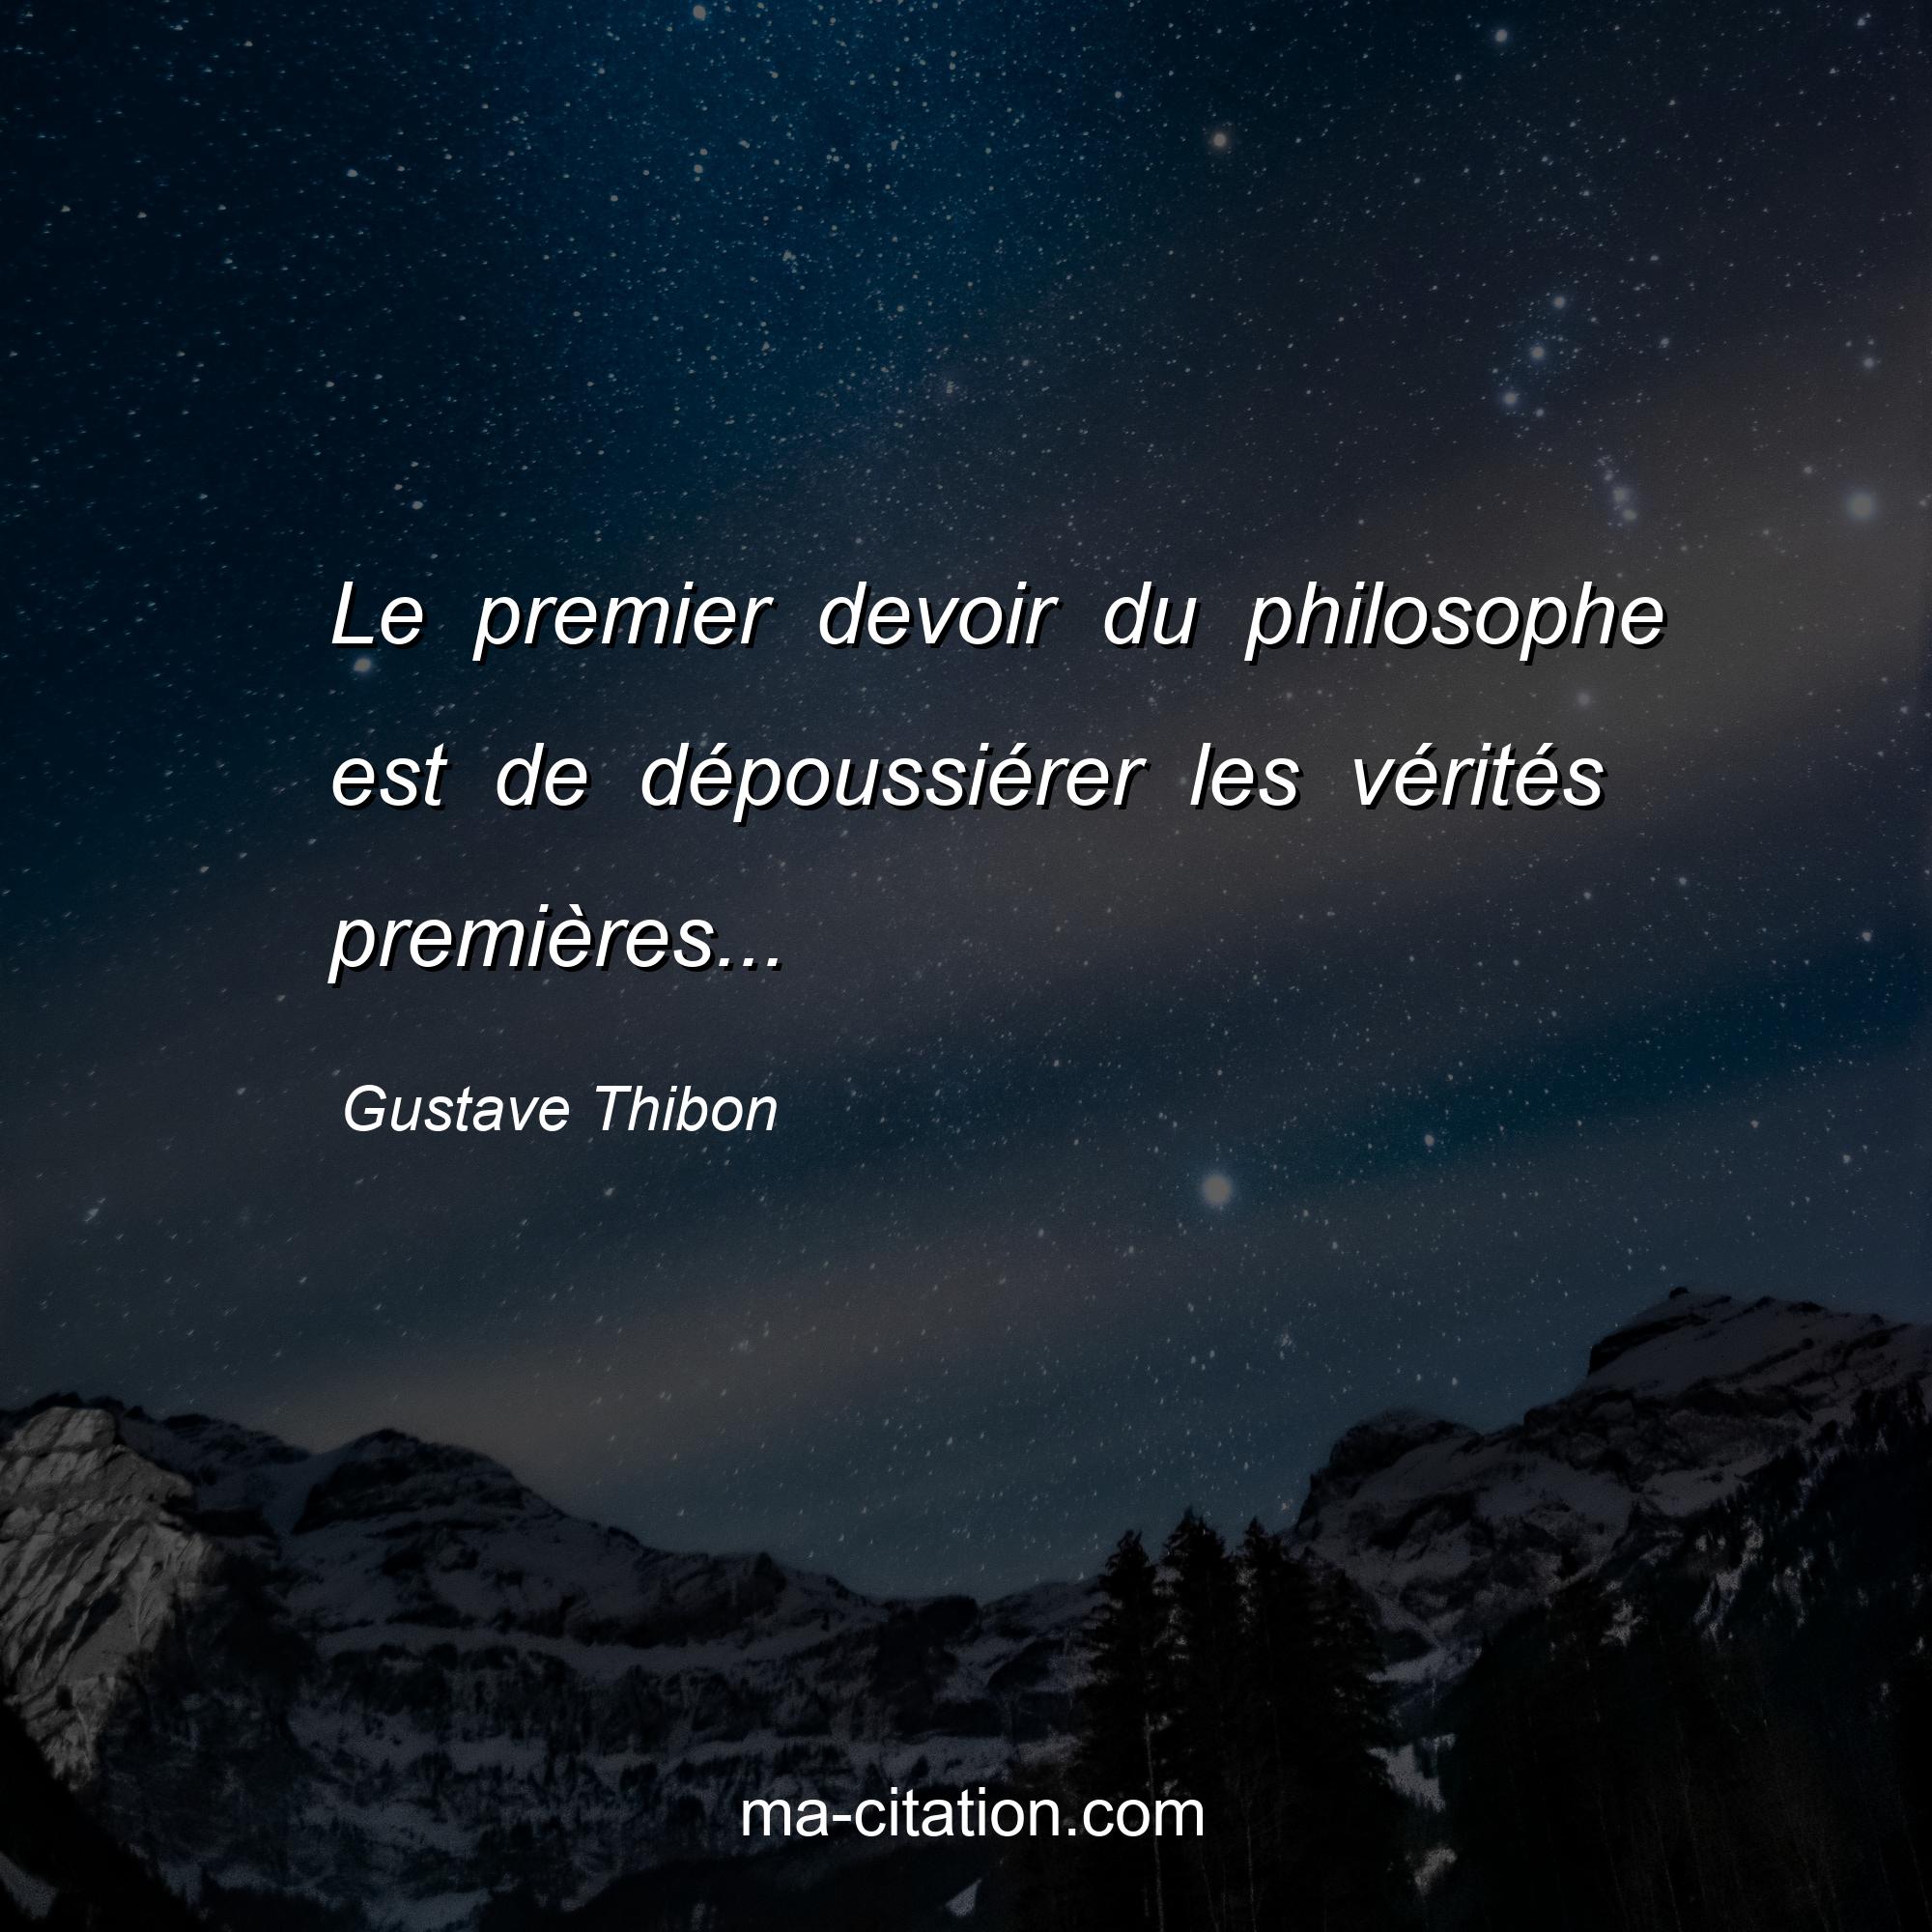 Gustave Thibon : Le premier devoir du philosophe est de dépoussiérer les vérités premières...